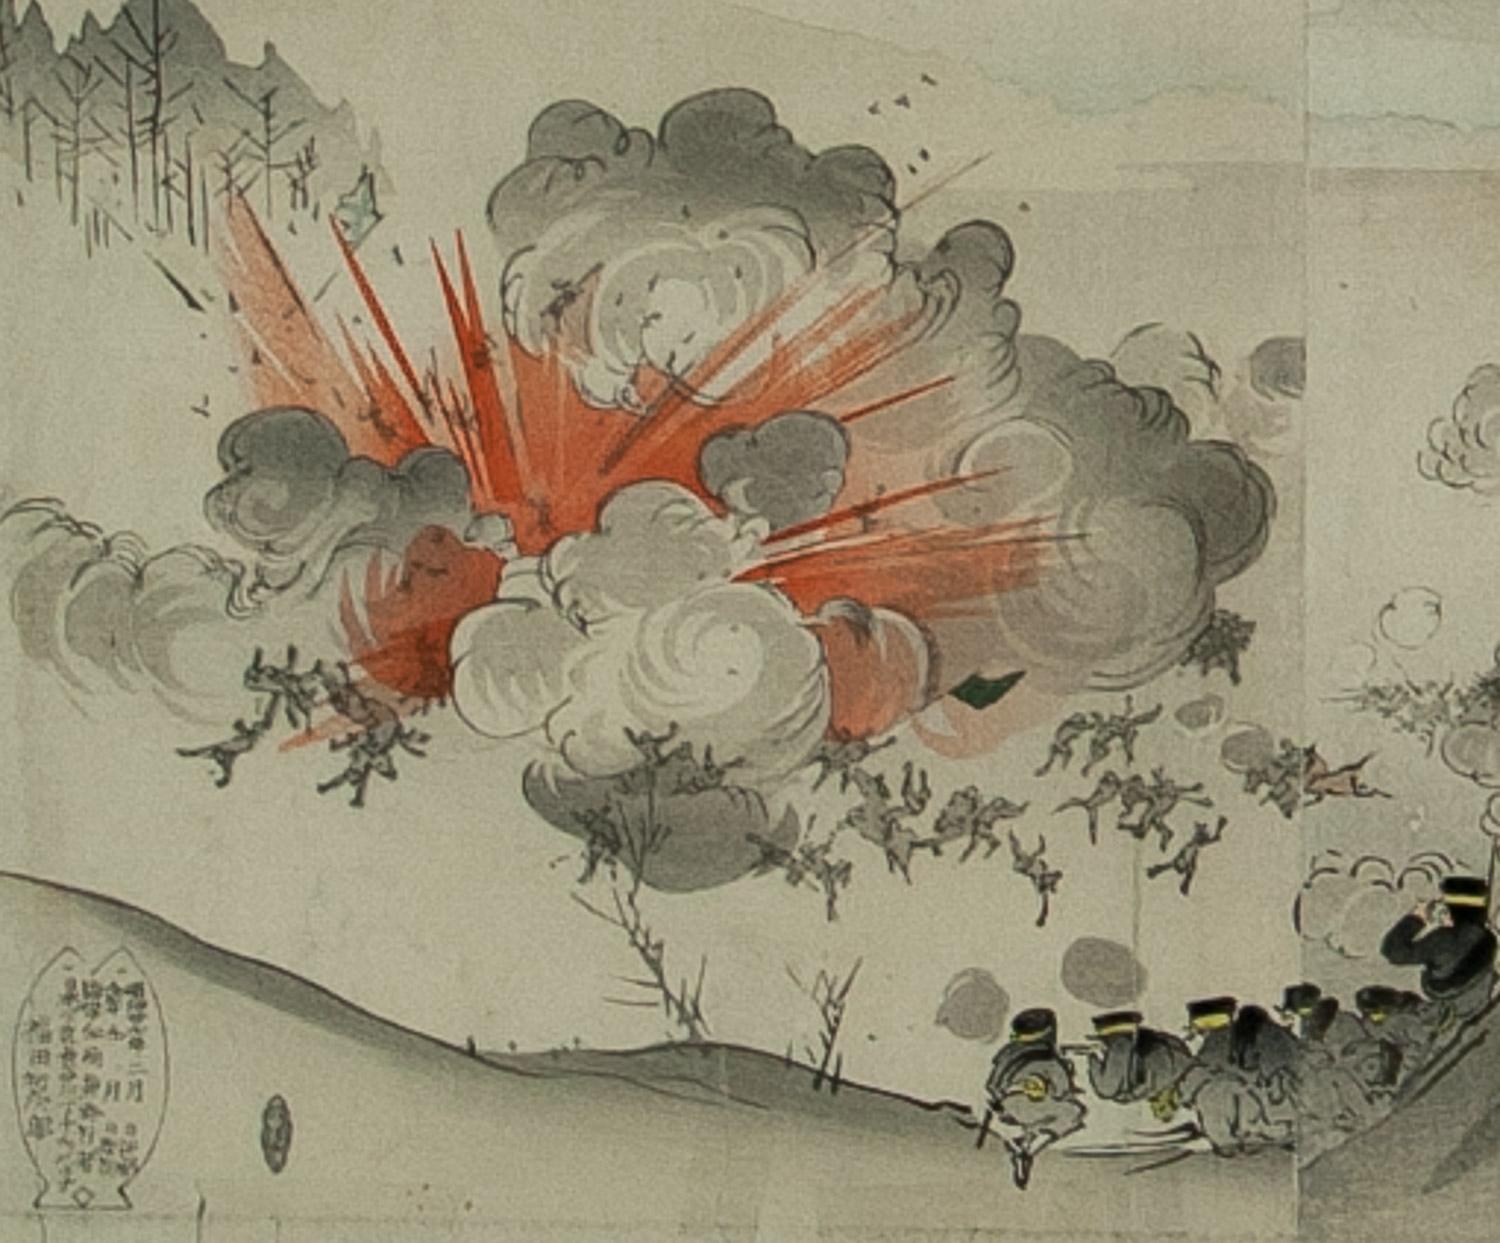        A Fierce Battle at Seoul von Kokunimasa ( auch bekannt als Ryukel ) ist ein  holzschnitt-Tryptichon von 1904 in gutem Zustand. Utagawa Kokunimasa (1874-1944) war ein Holzschnittkünstler aus der berühmten Utagawa-Familie, einem der größten